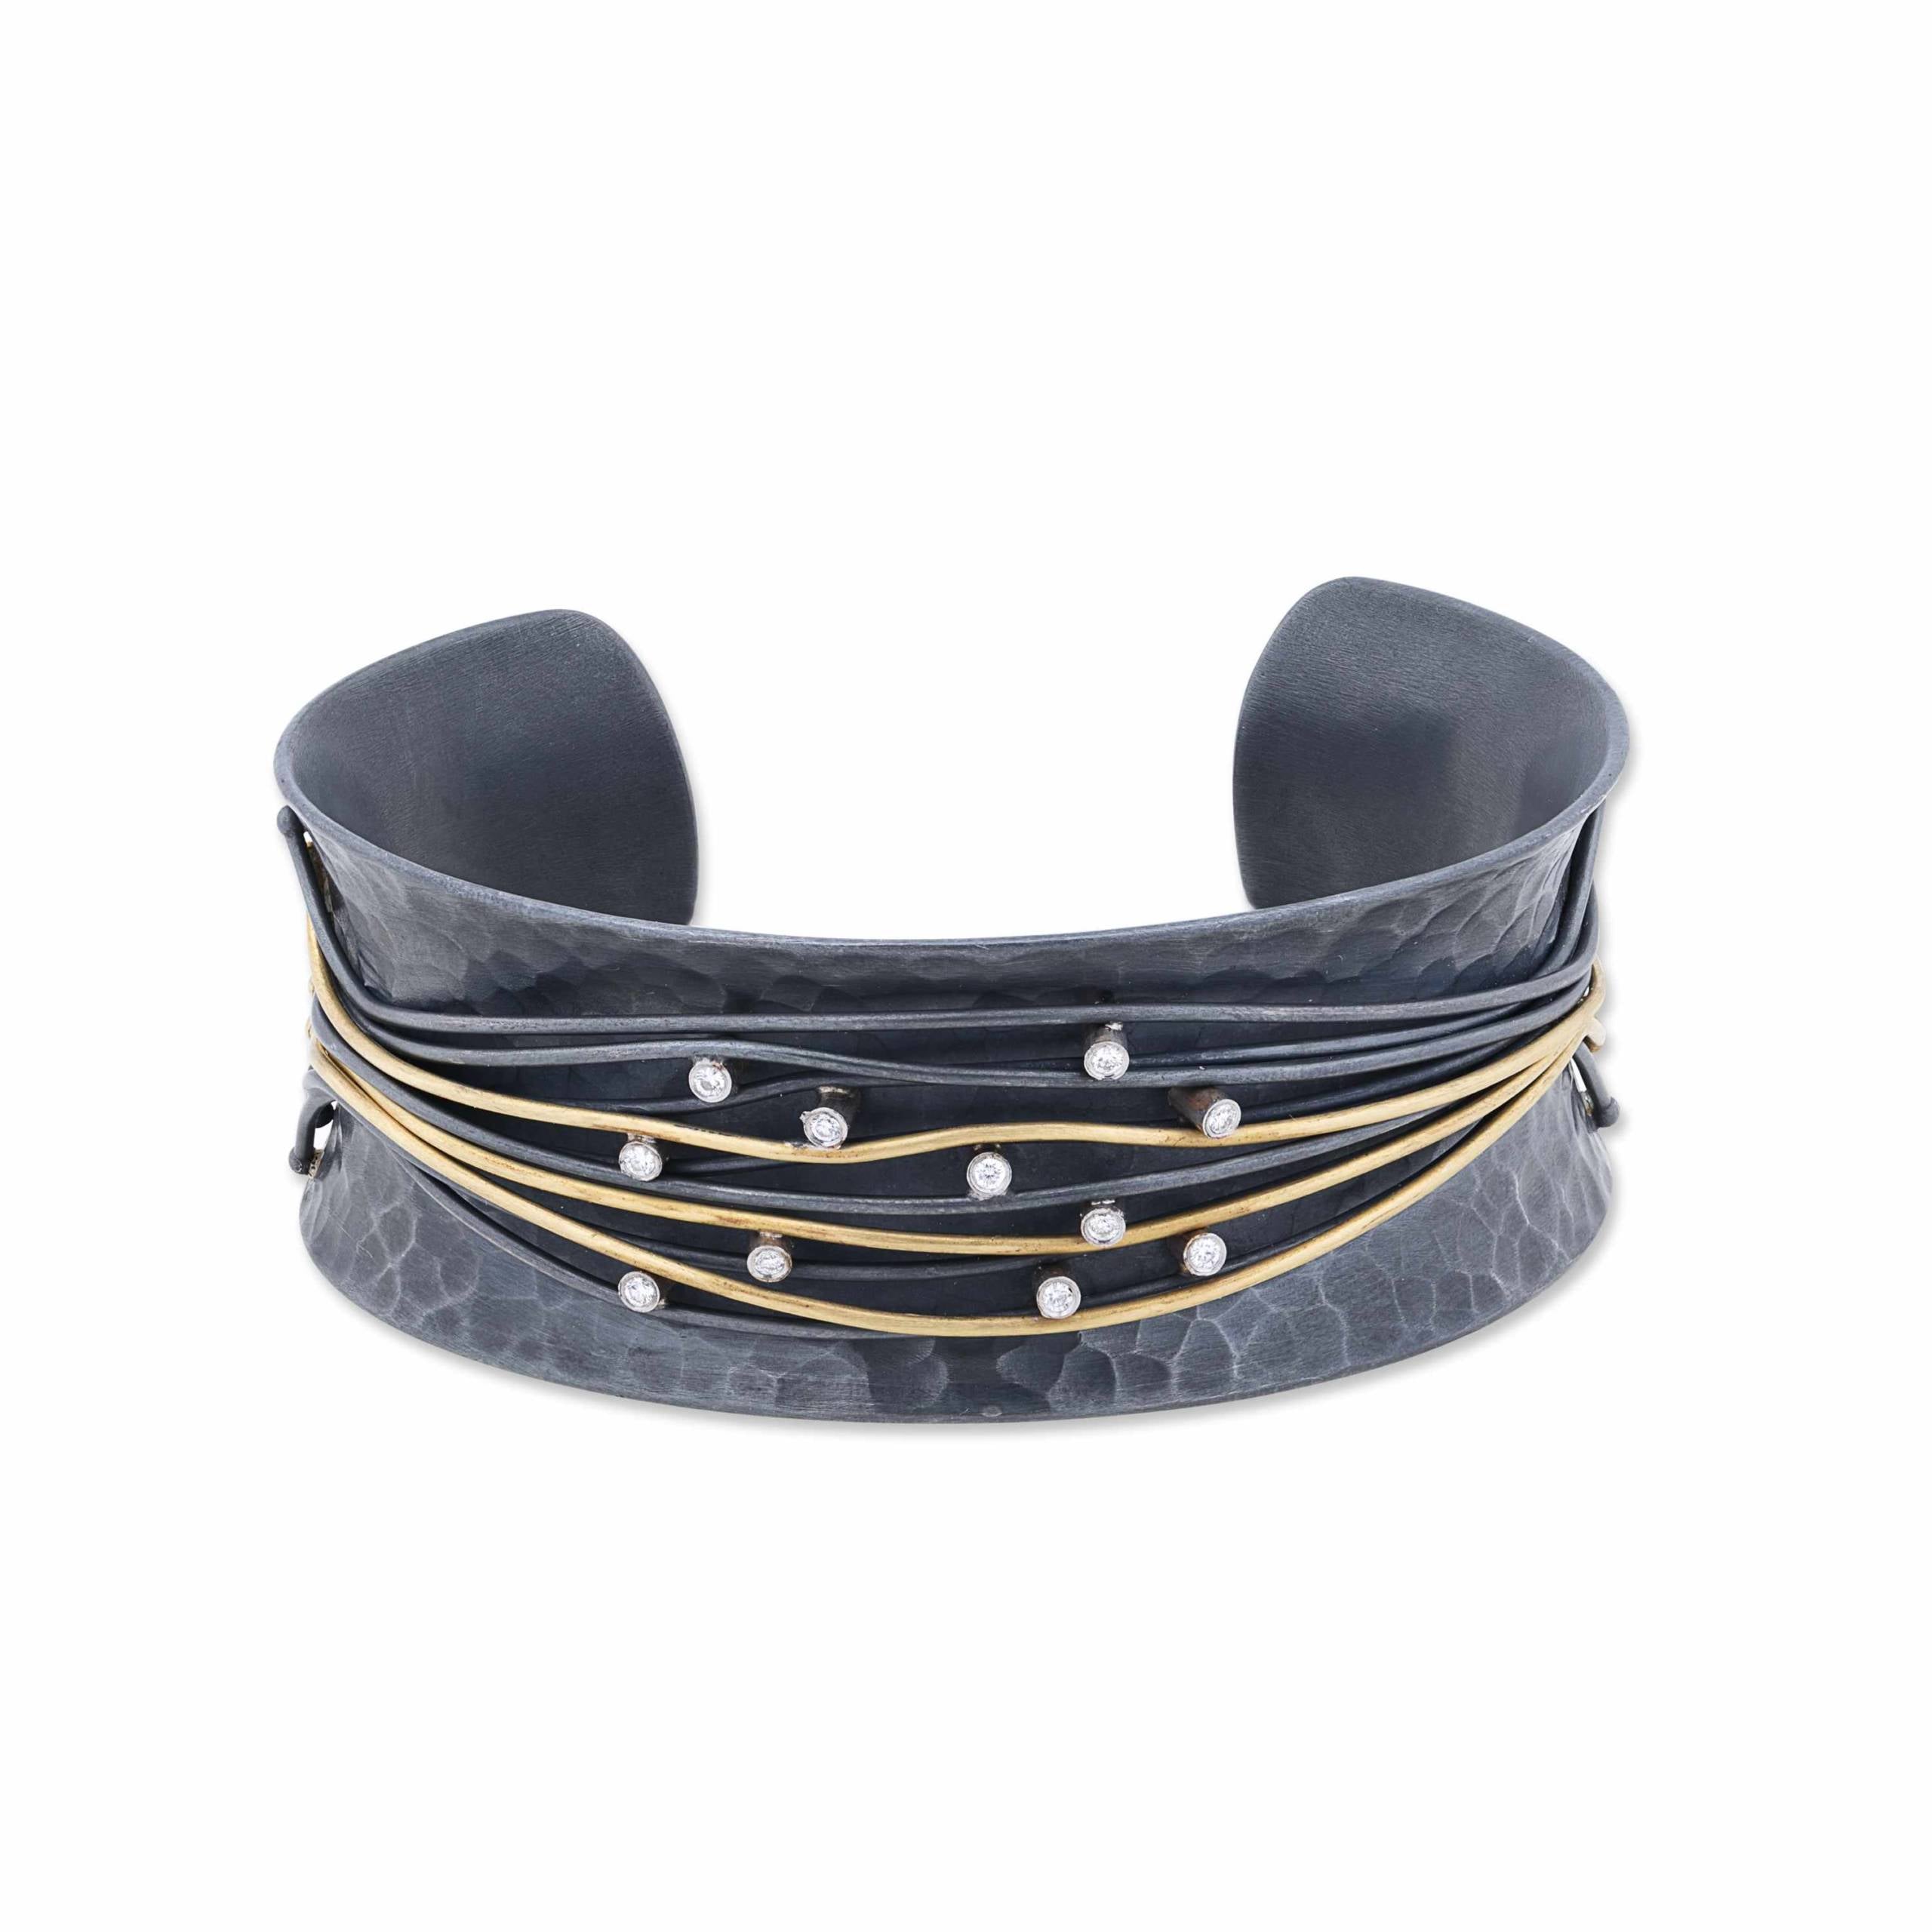 22K Gold & Oxidized Silver "Wiredance" Open Cuff Bracelet with Diamond